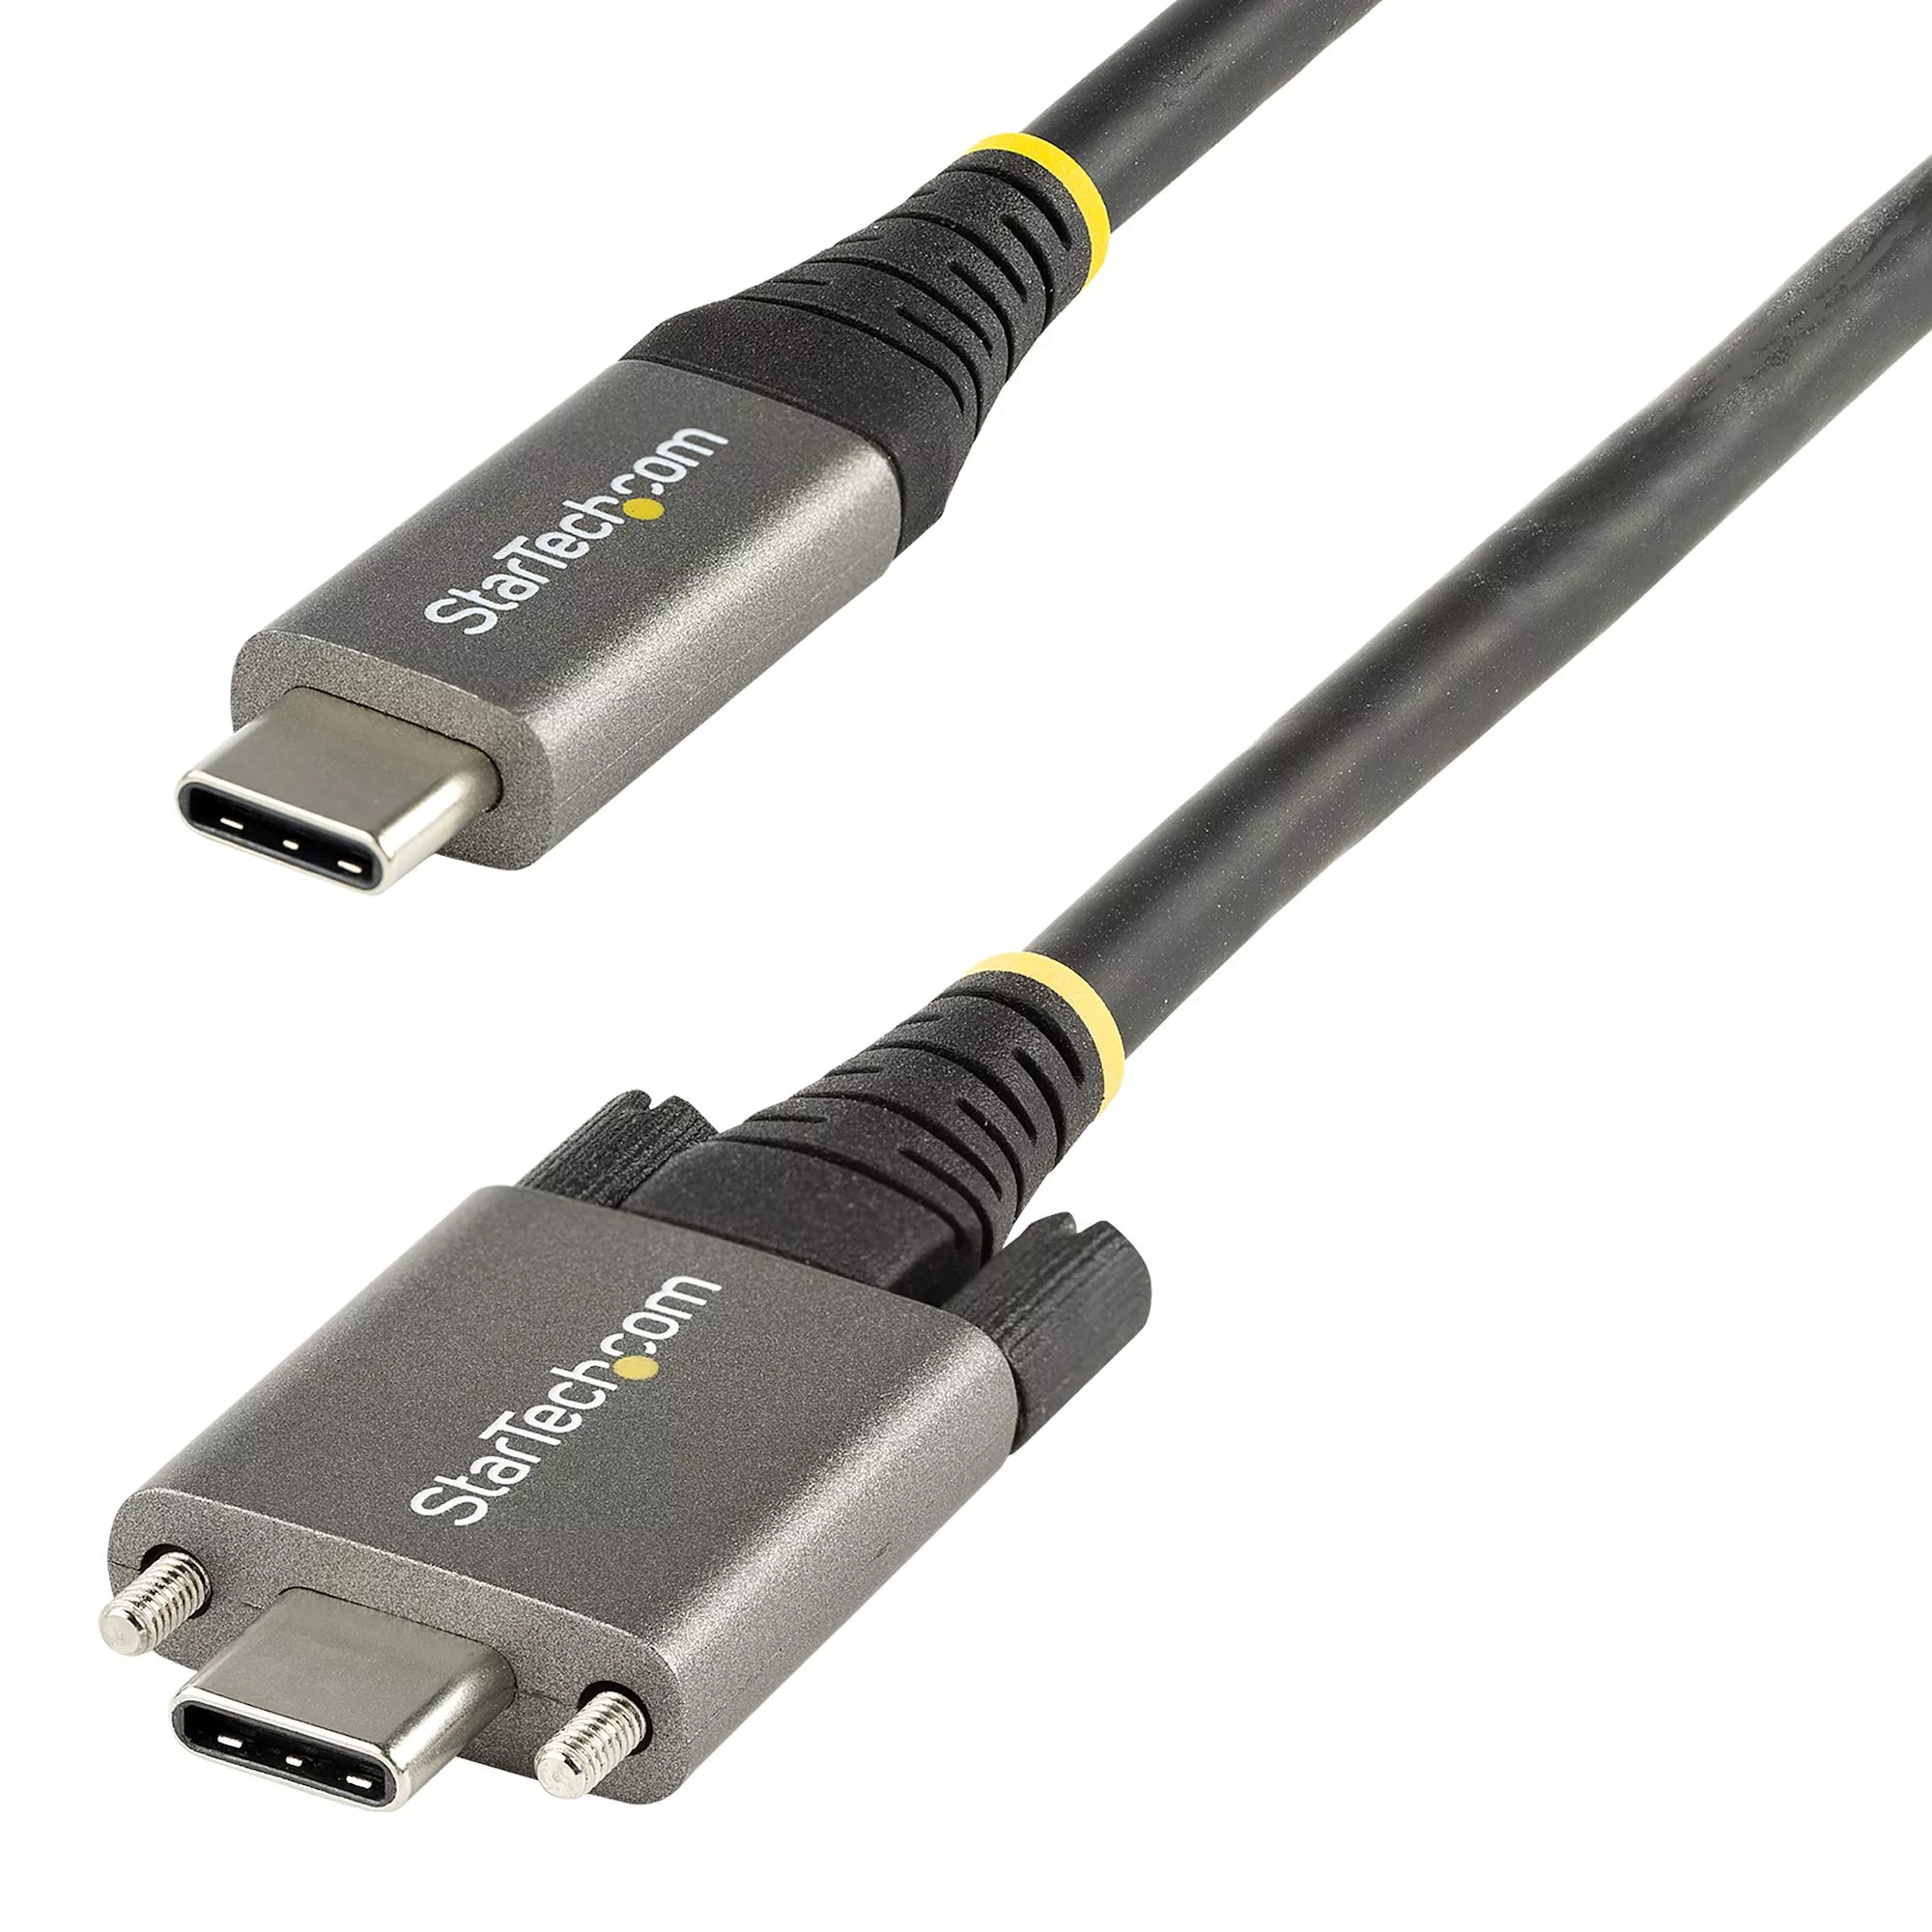 Revendeur officiel StarTech.com Câble USB C 10Gbps à Verrouillage par Vis